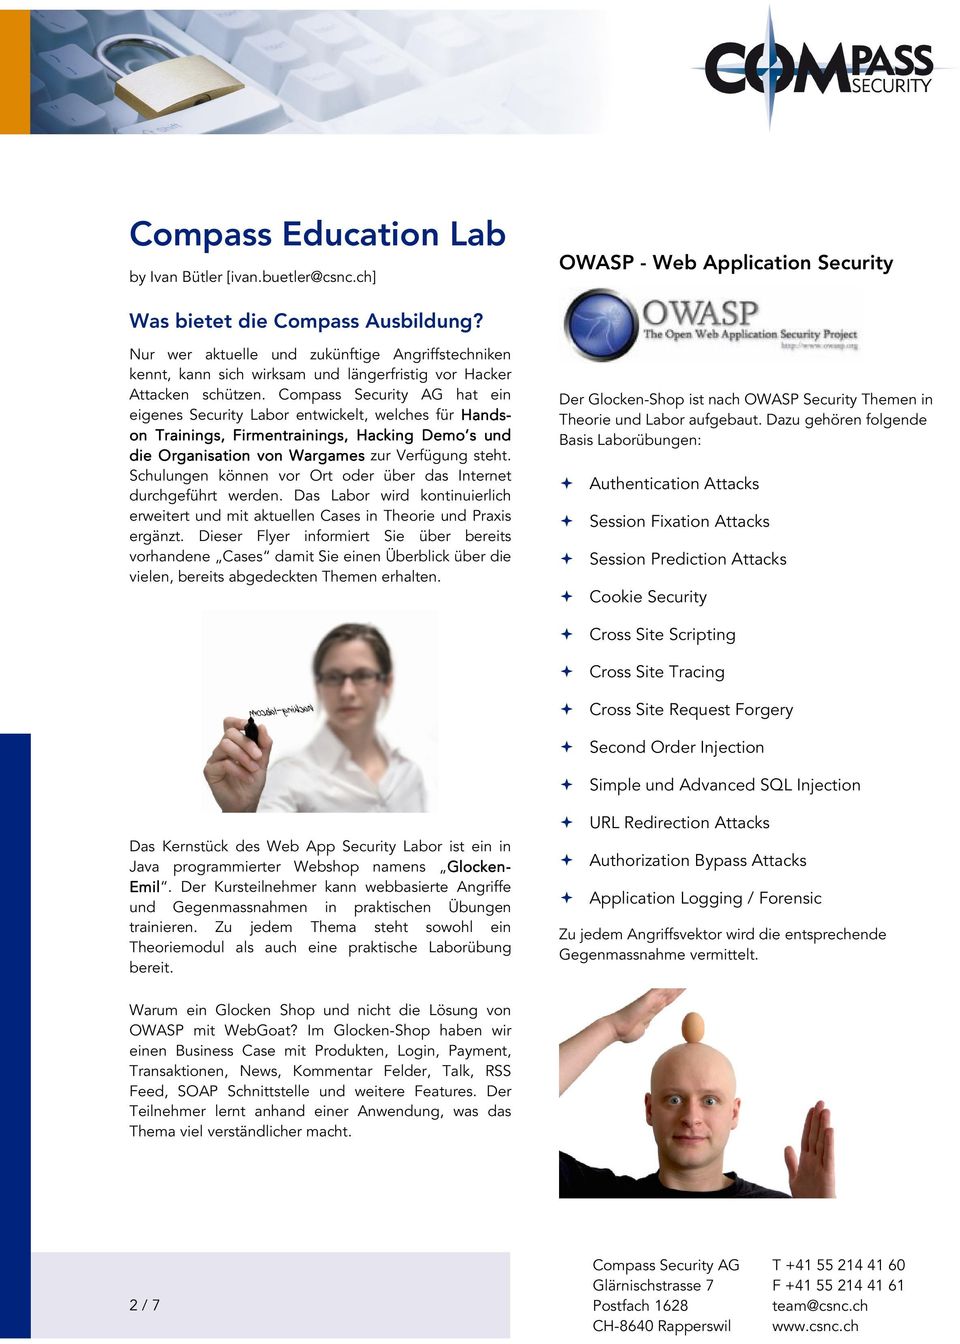 Compass Security AG hat ein eigenes Security Labor entwickelt, welches für Hands- on Trainings, Firmentrainings, ngs, Hacking Demo s und die Organisation von Wargames zur Verfügung steht.